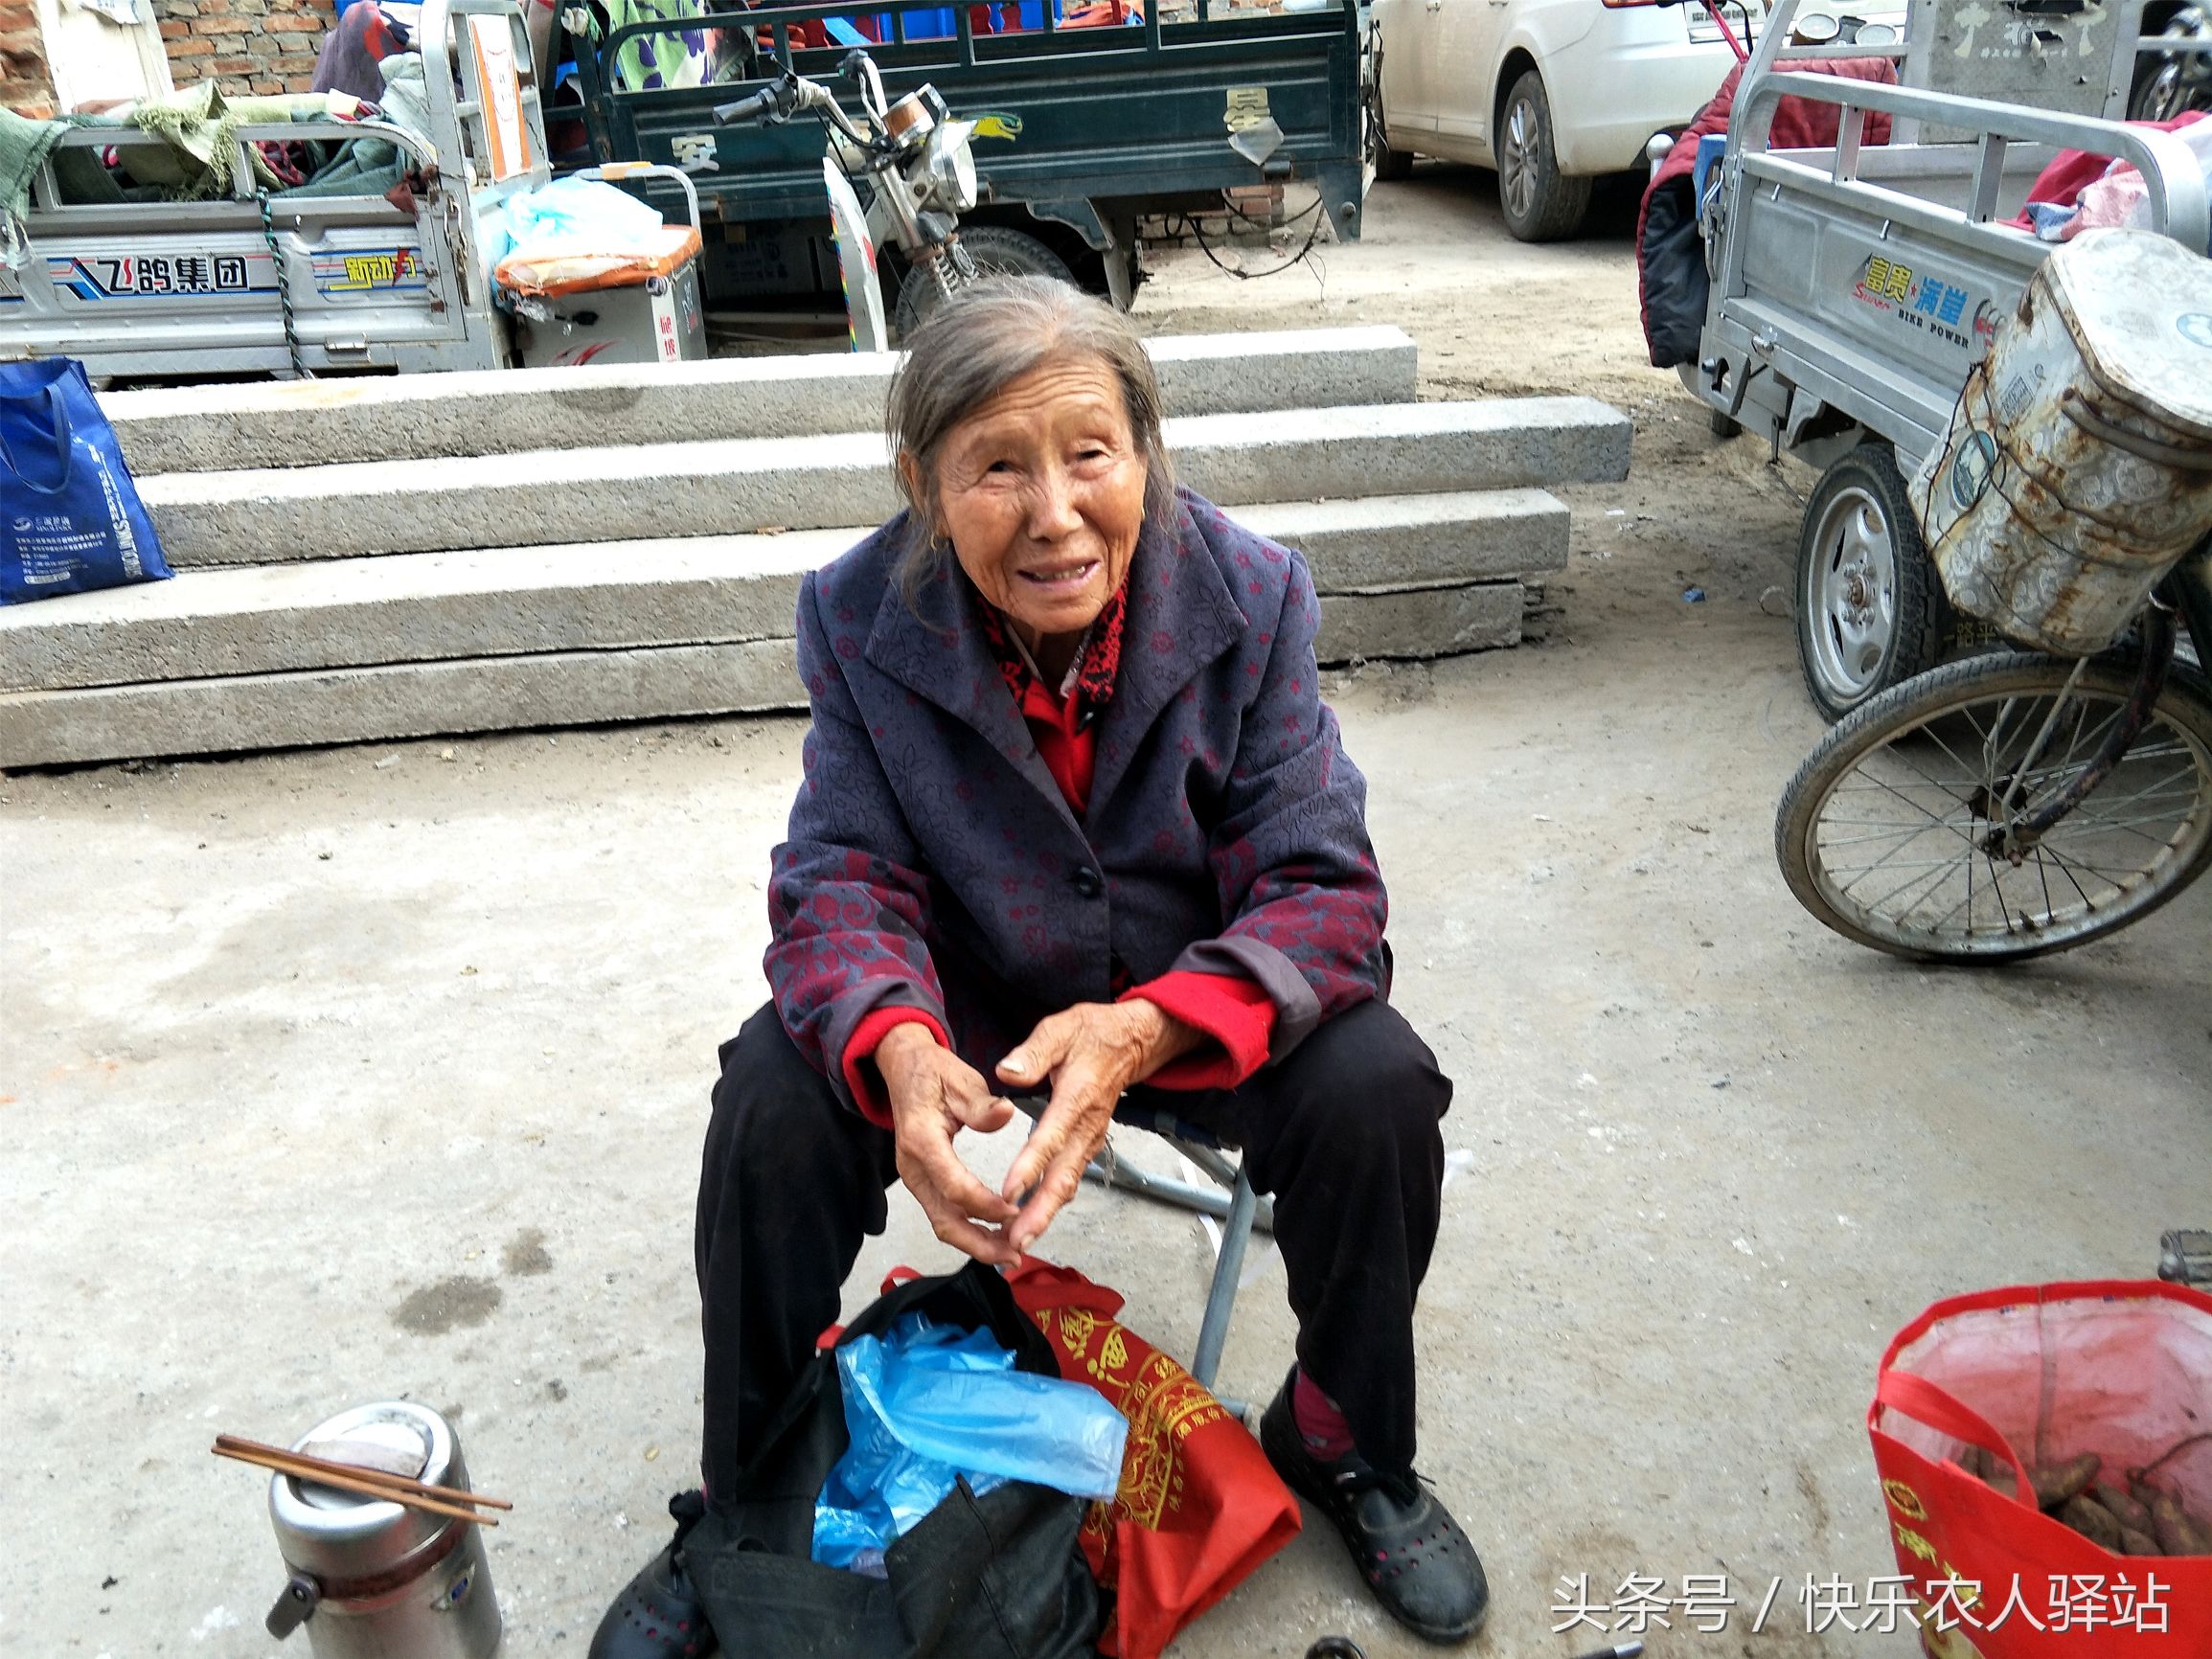 农村婆婆摆摊卖红薯,12元一斤无人问津,因为乡下卖5毛